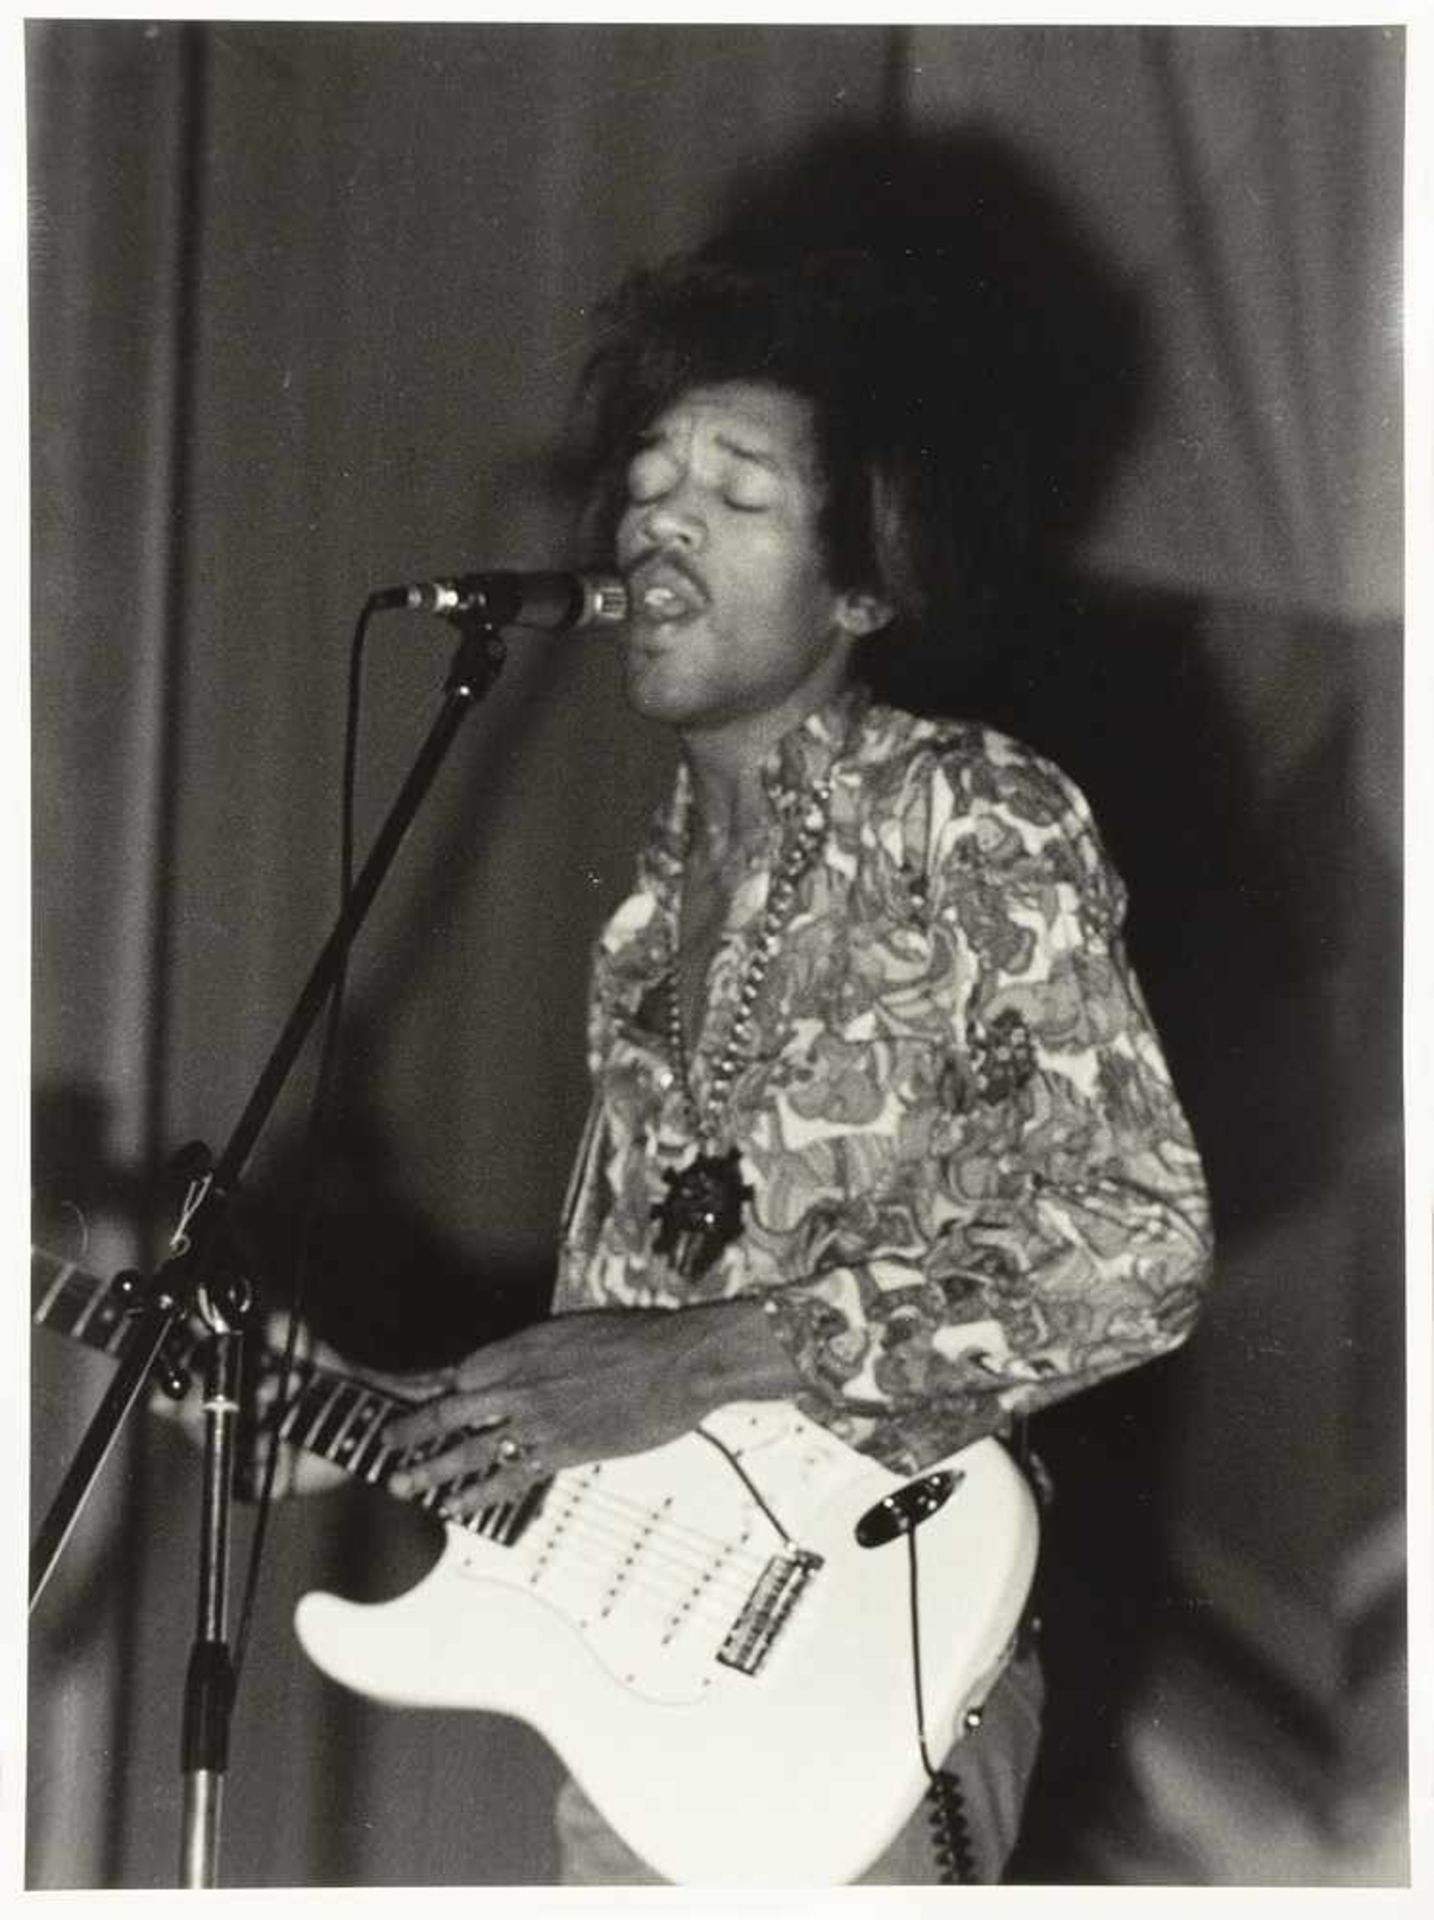 Mimmo Chianura. Jimmy Hendrix, Teatri Brancaccio Roma 25 maggio 1968. Acht Fotografien. 1968. 40 :